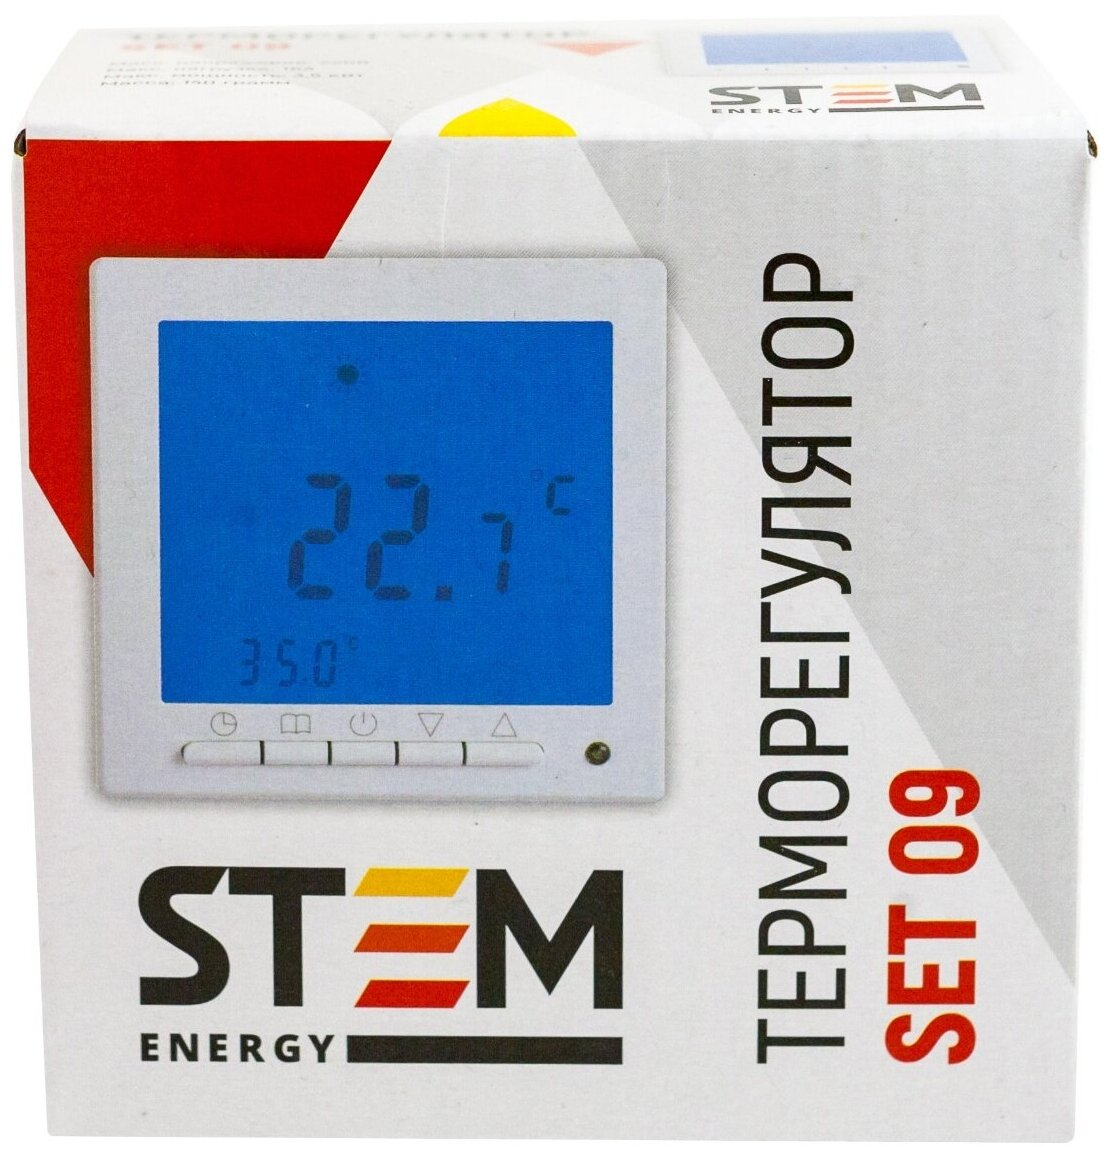 Программируемый терморегулятор STEM Energy SET 09